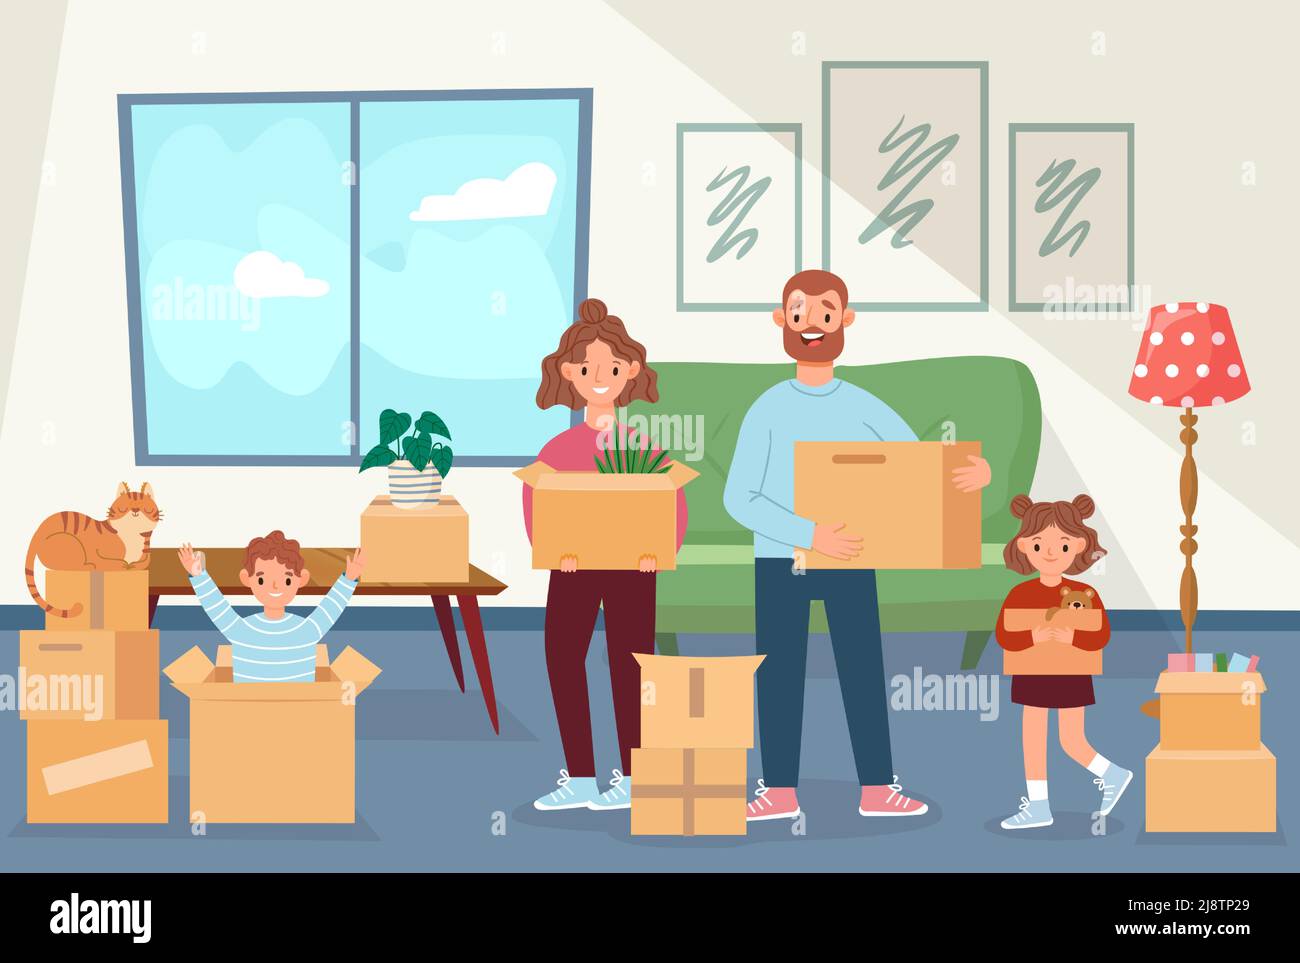 La famille se déplace vers une nouvelle maison. Parents et enfants heureux tenant des boîtes avec des articles ménagers. La mère, le père, les enfants et le chat déménagent Illustration de Vecteur